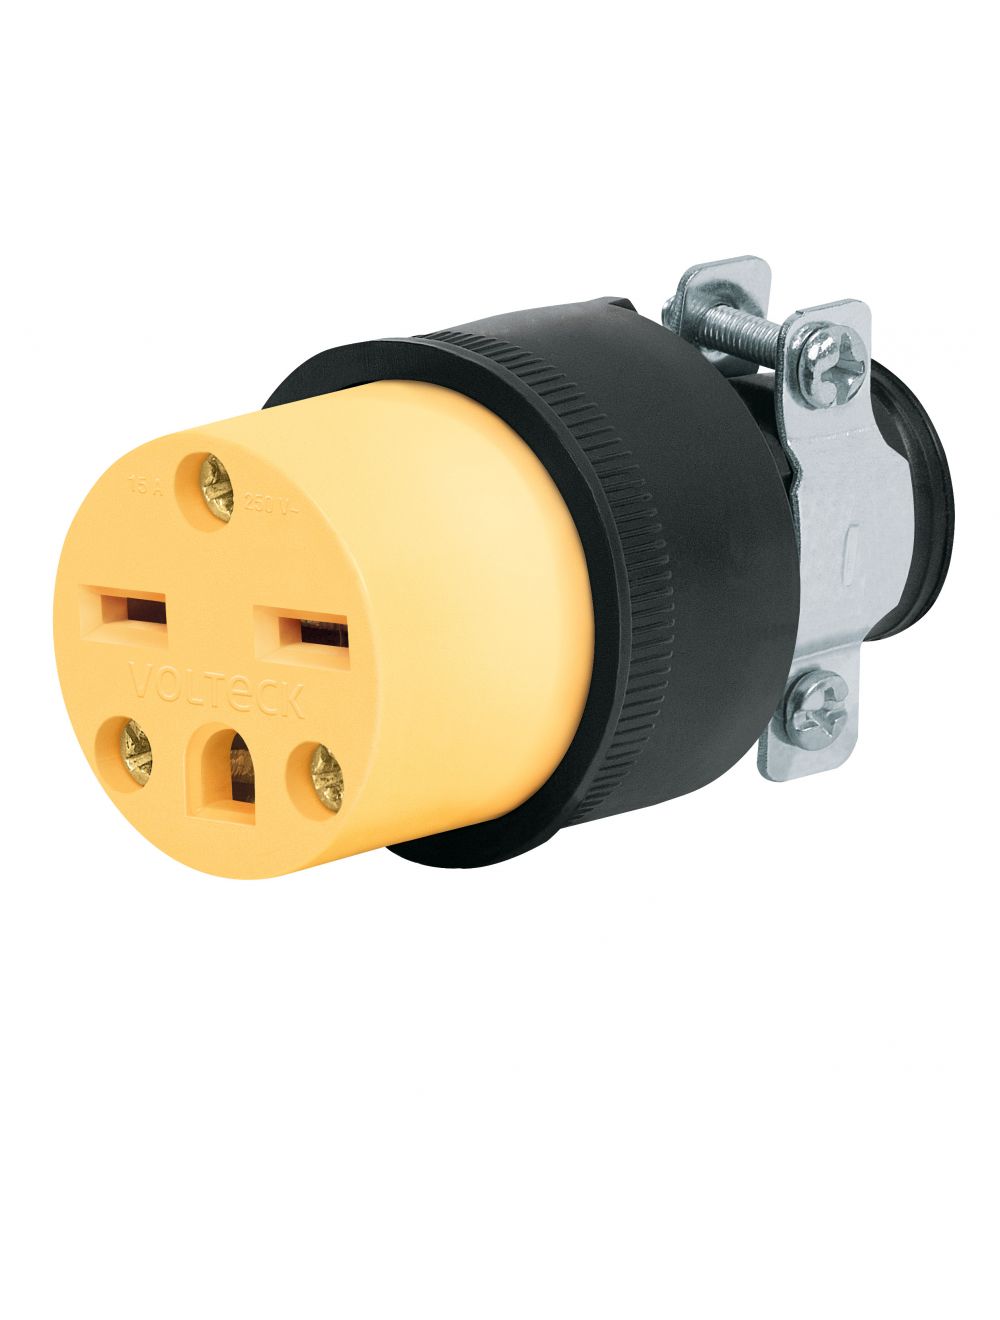 power plug types